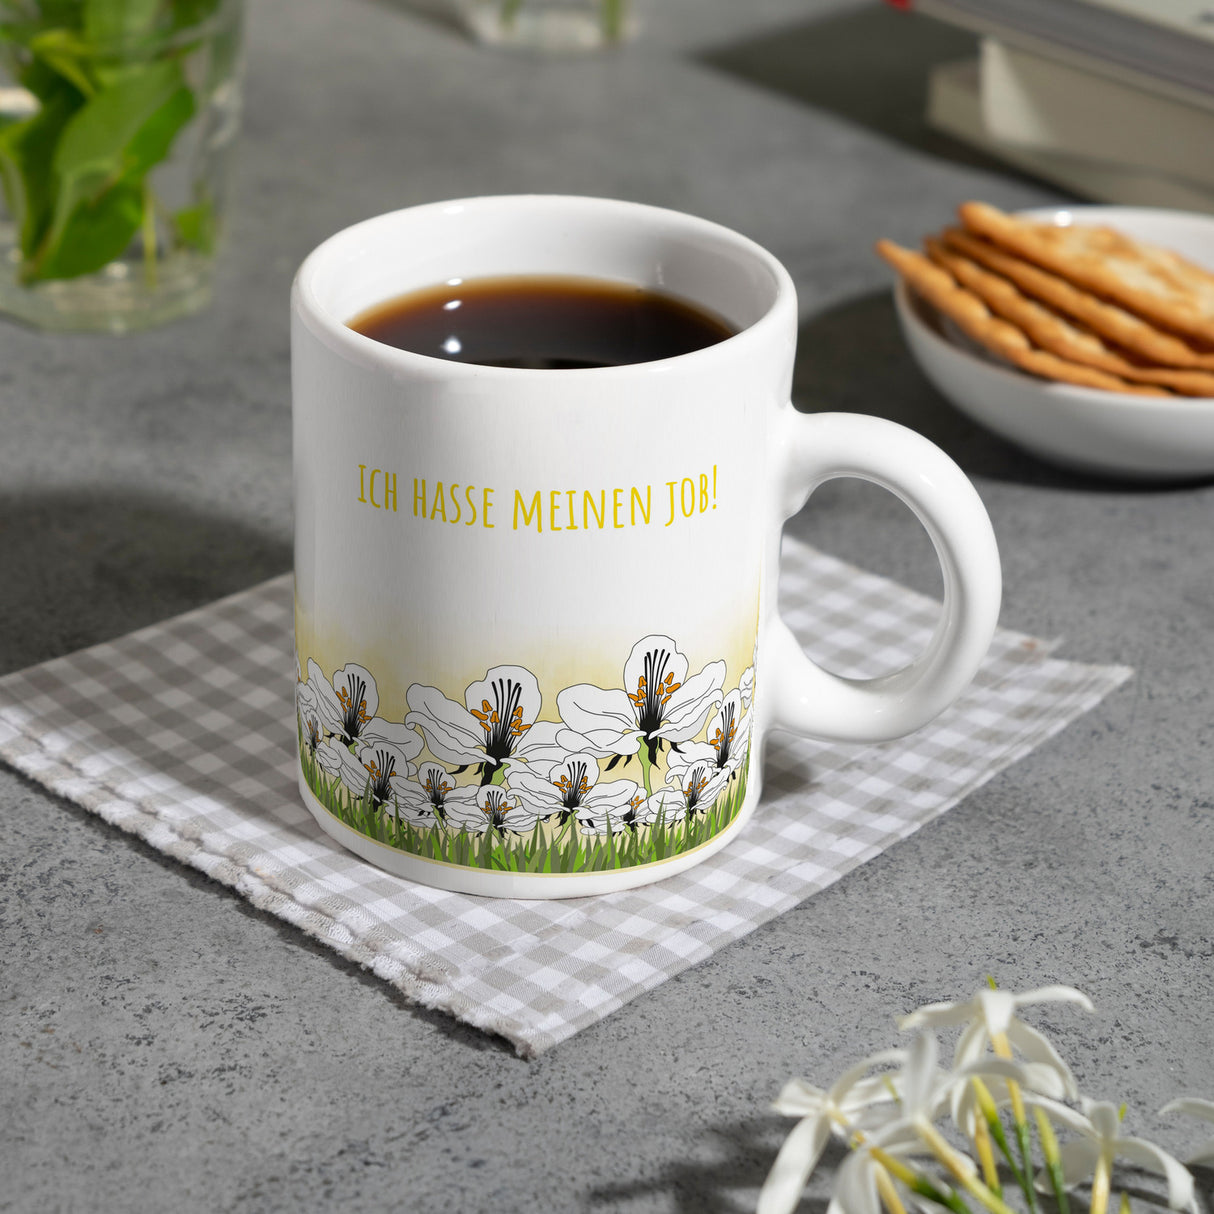 Kaffeebecher mit Wiesen-Motiv, Biene und witzigem Spruch fürs Büro oder Kollegen